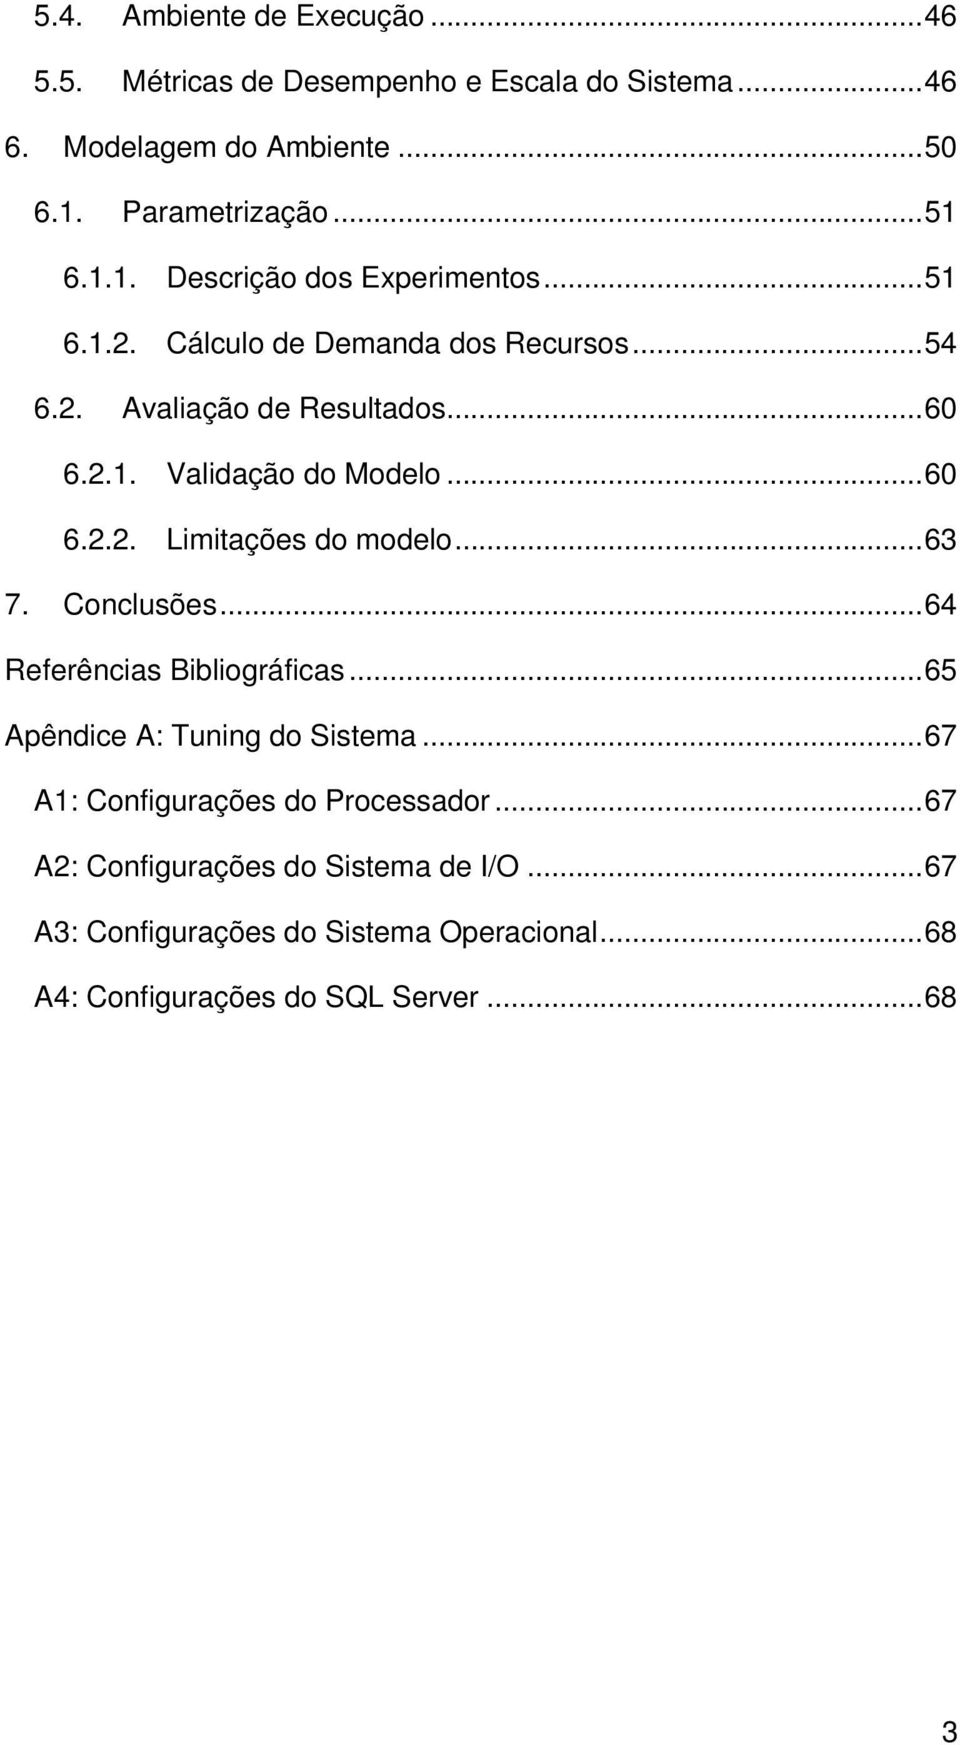 ..60 6.2.2. Limitações do modelo...63 7. Conclusões...64 Referências Bibliográficas...65 Apêndice A: Tuning do Sistema.